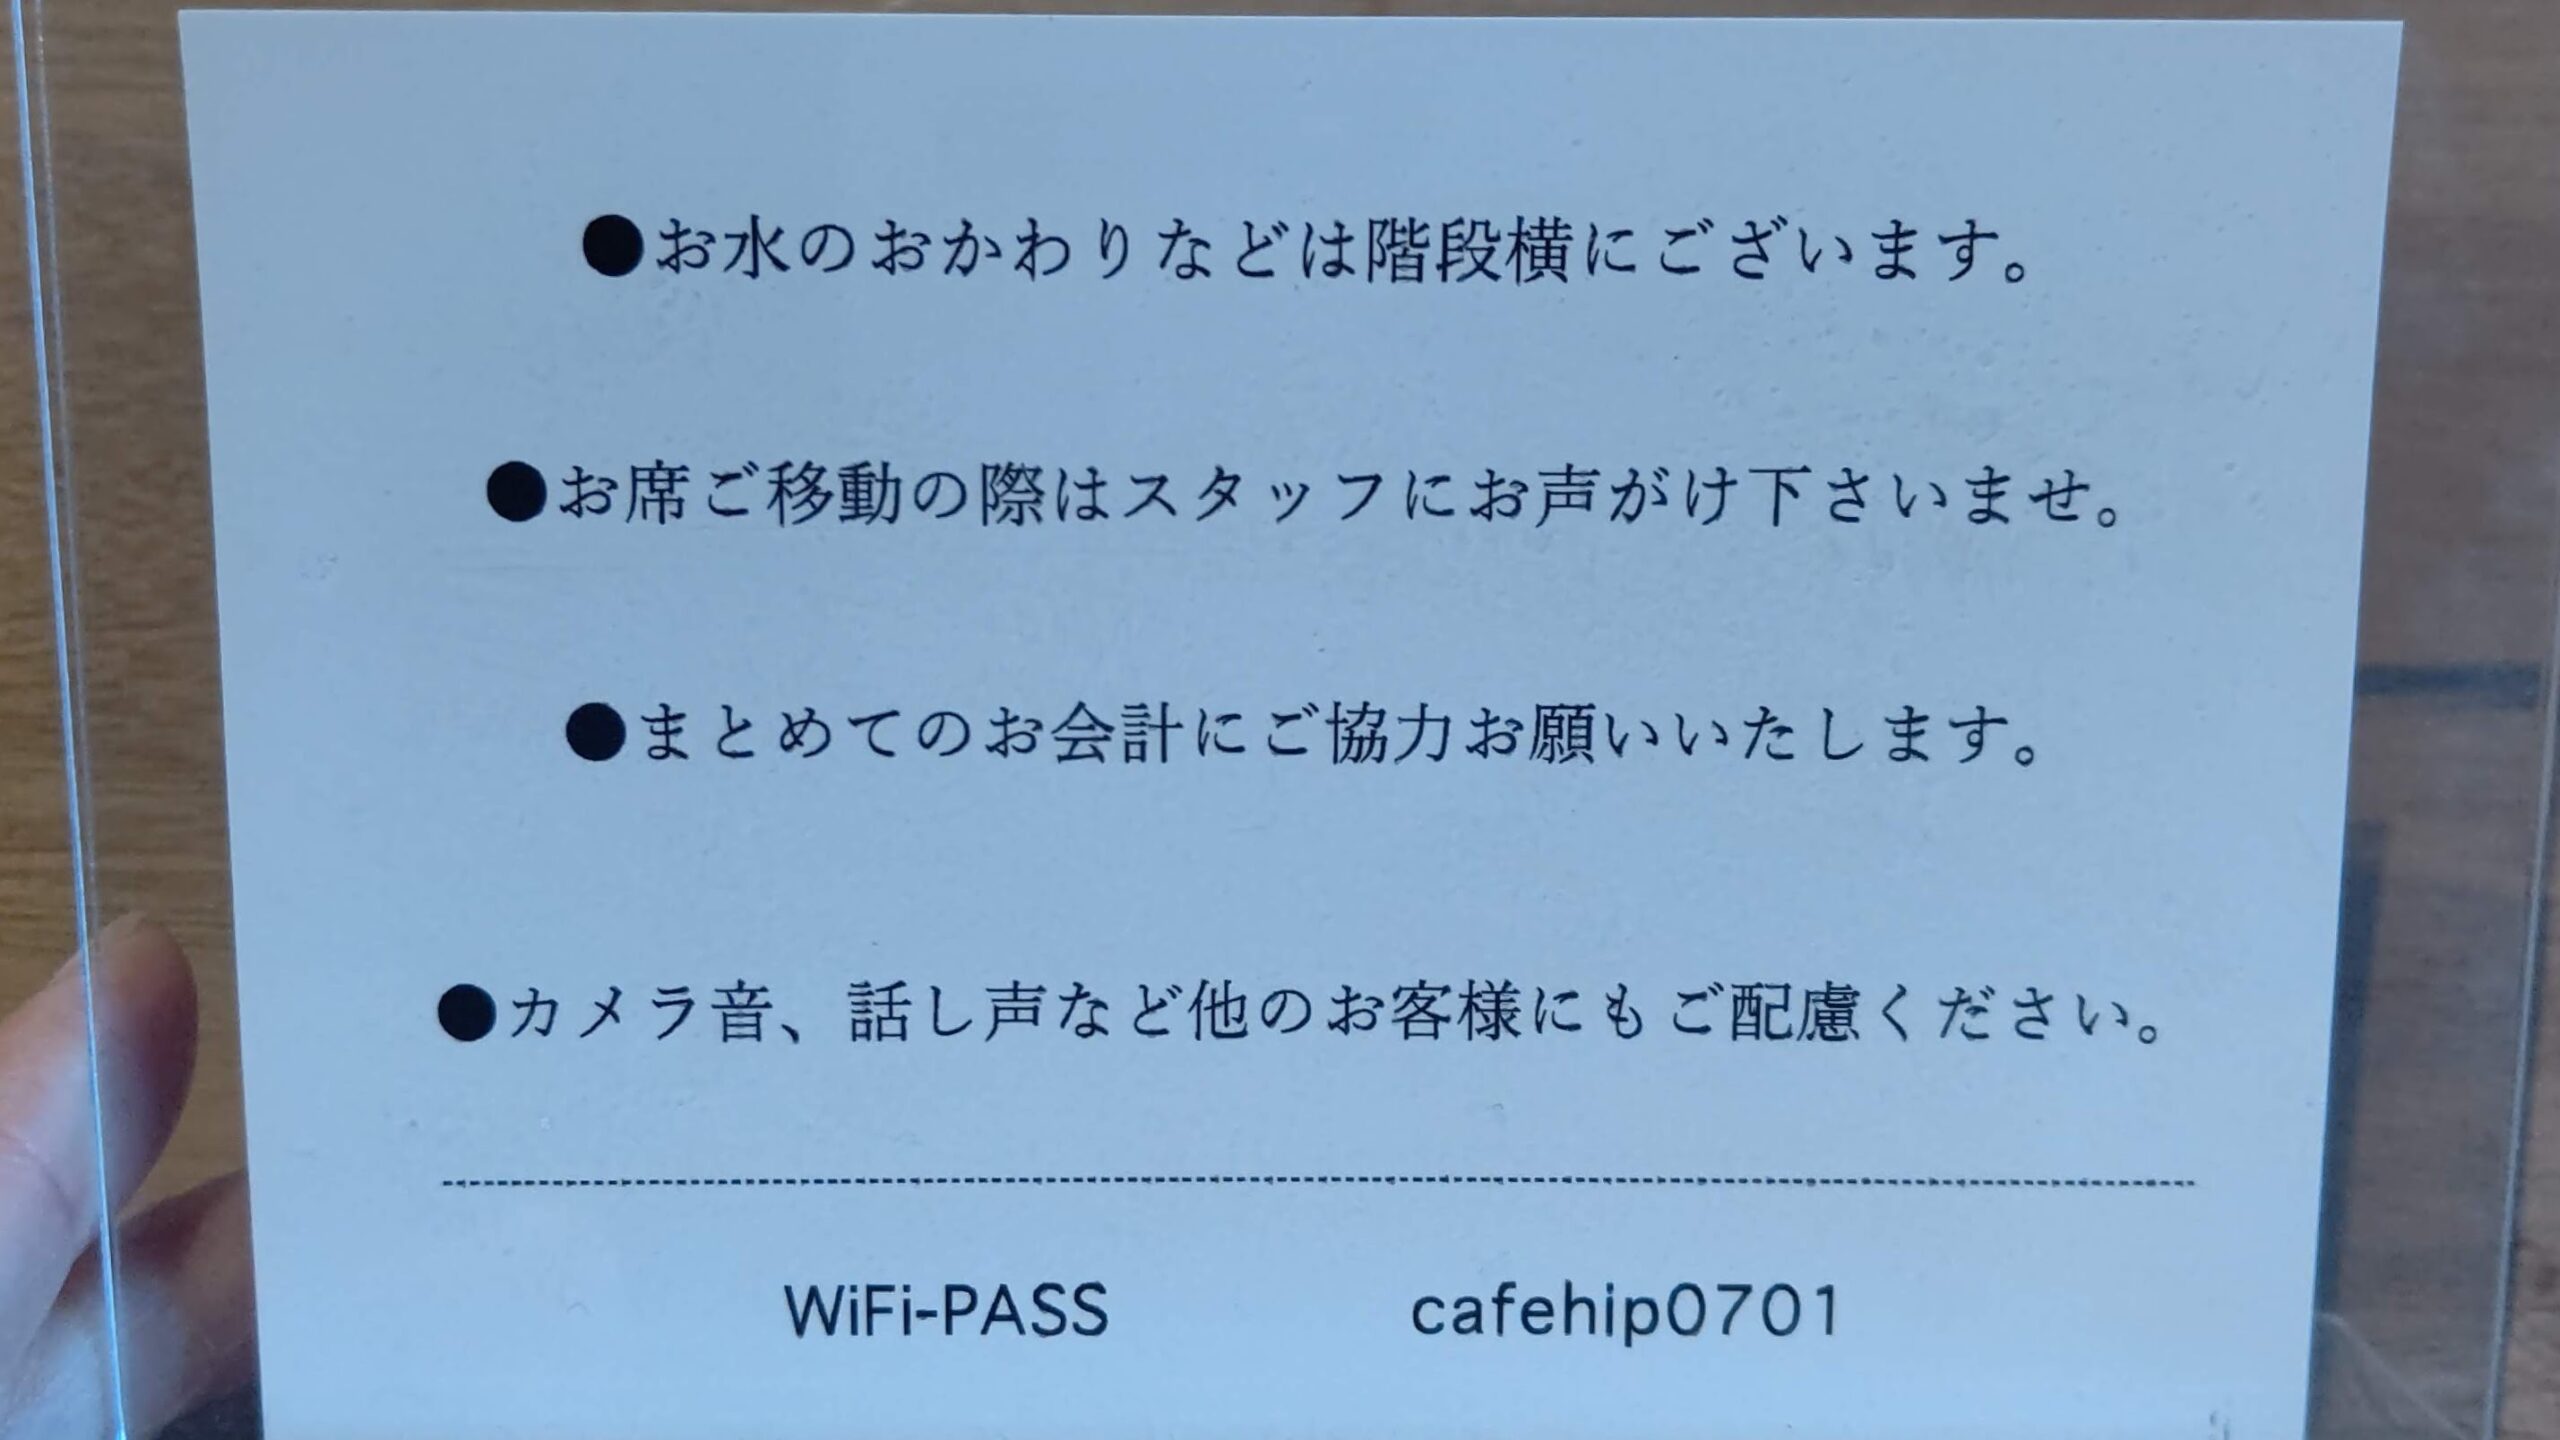 長野県北佐久郡 Cafe hip karuizawa Wi-Fi